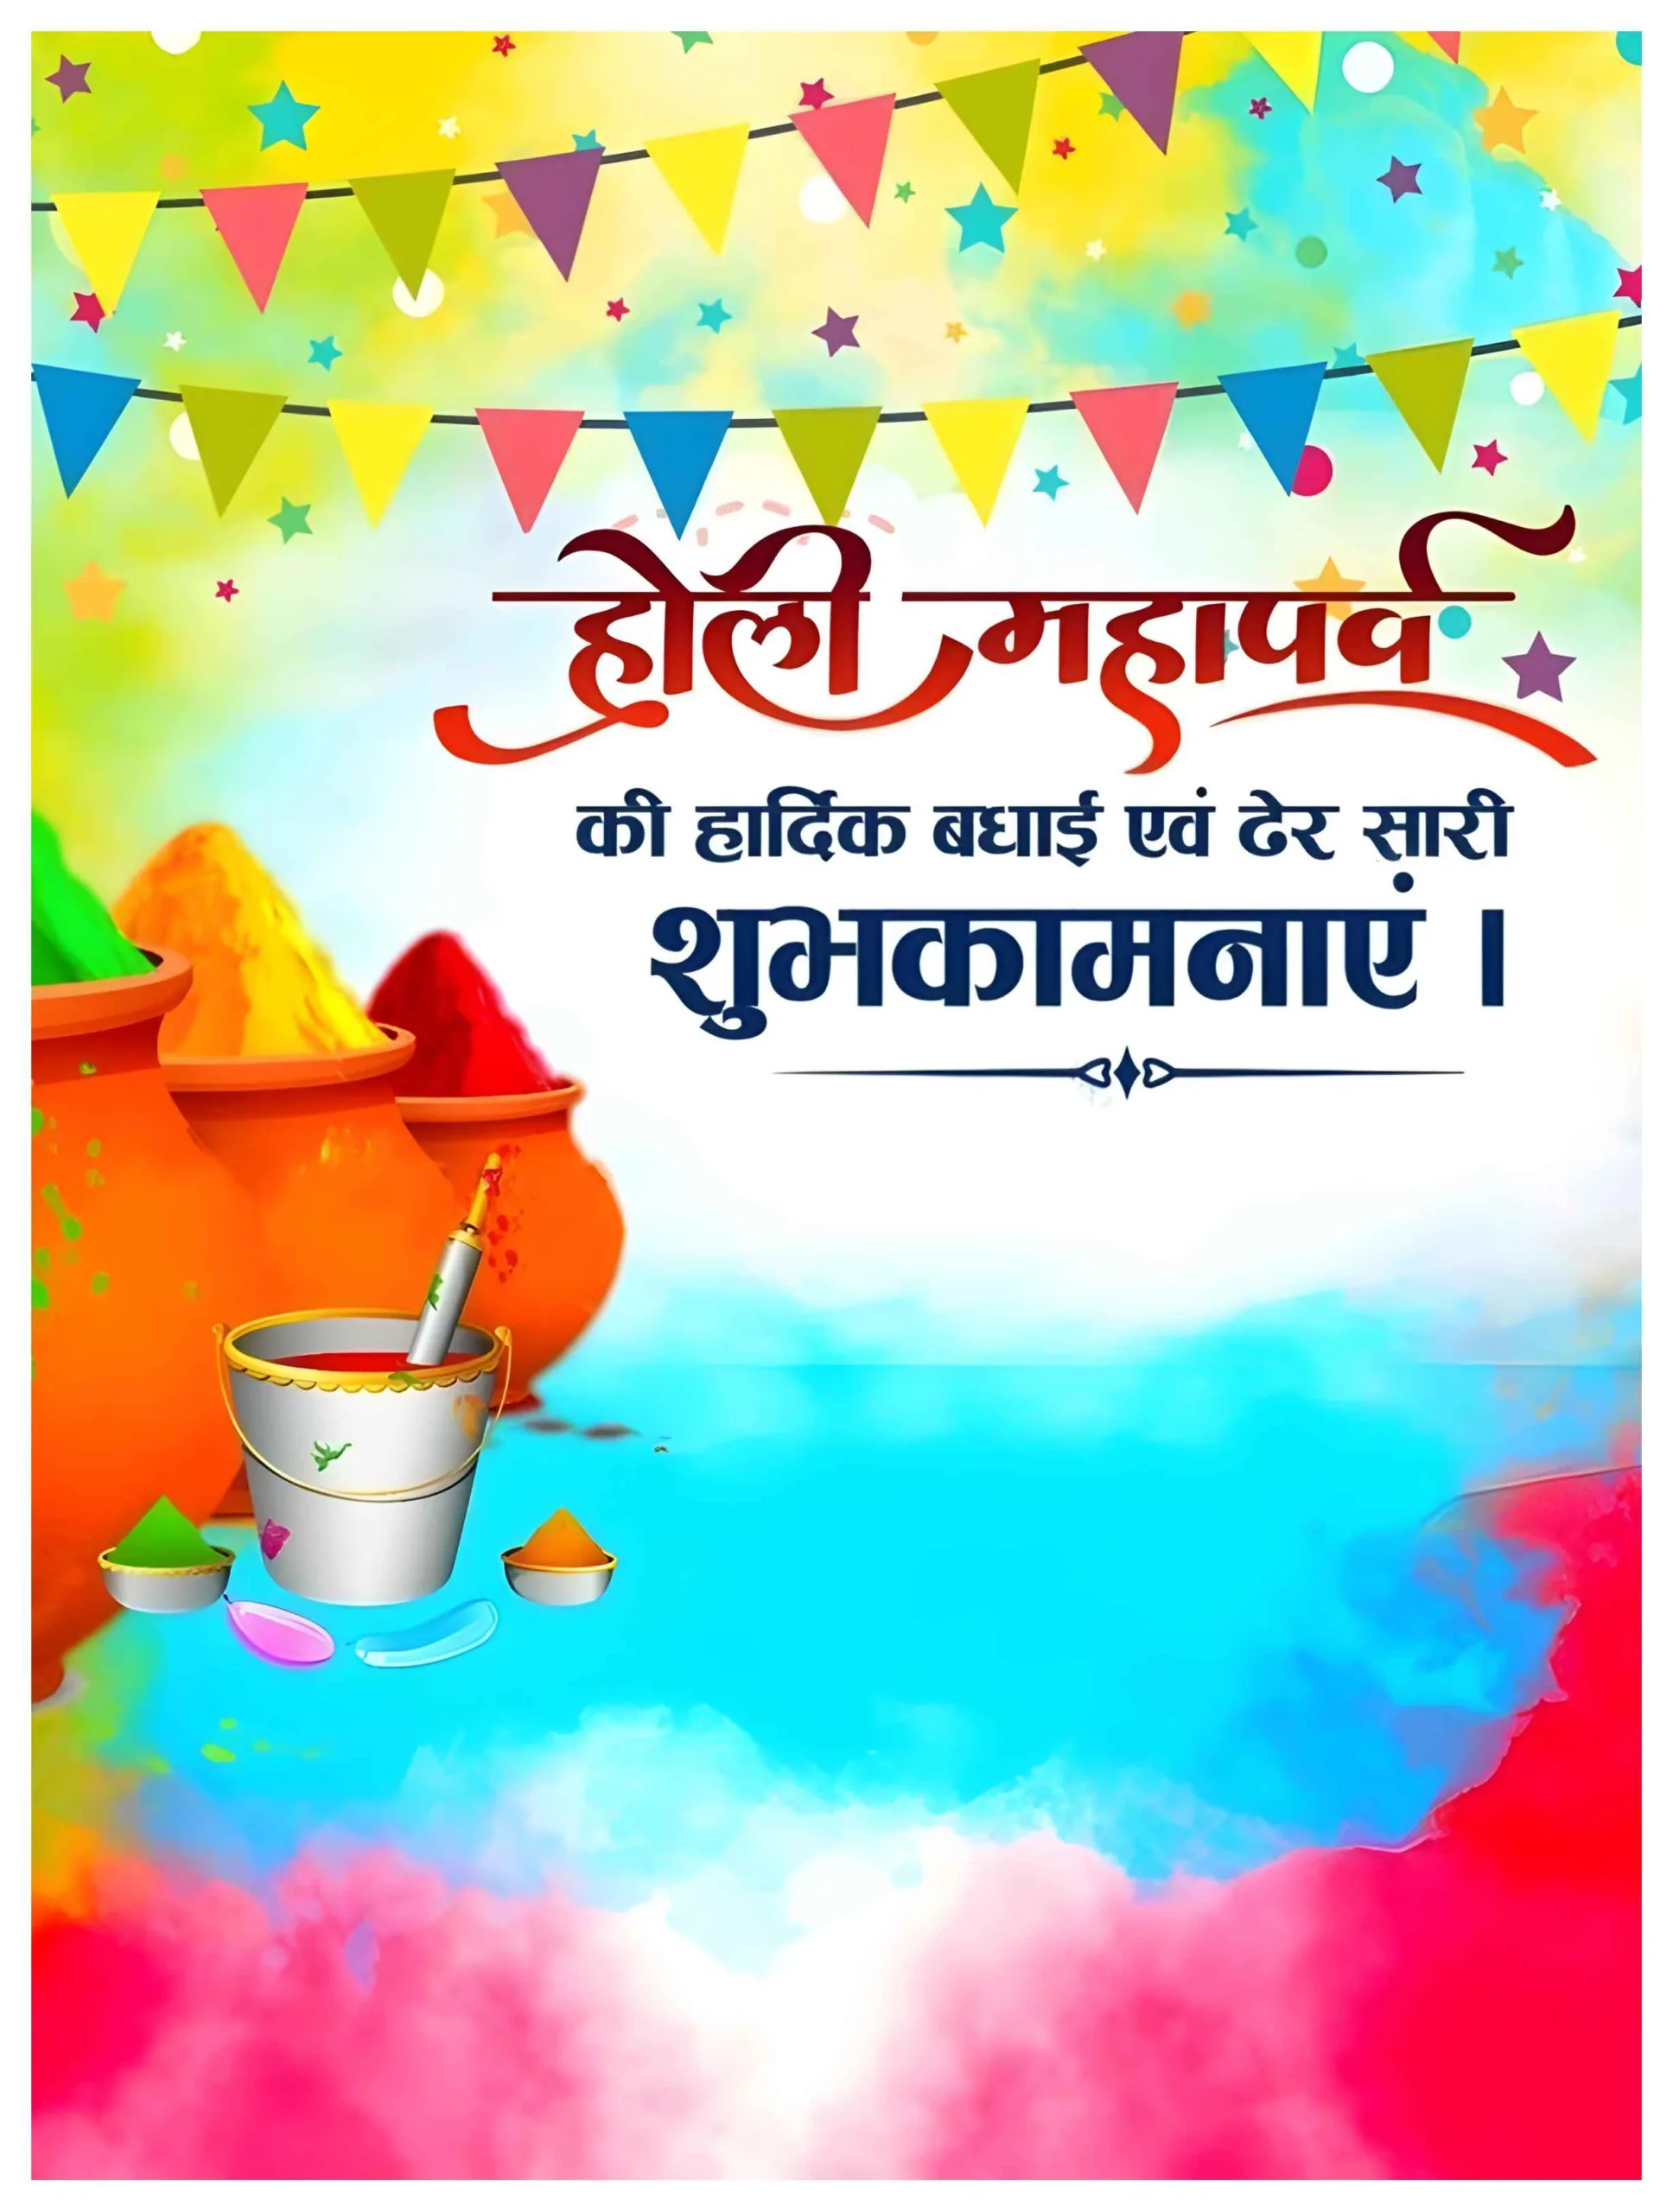 Happy Holi Wishes Banner in Hindi